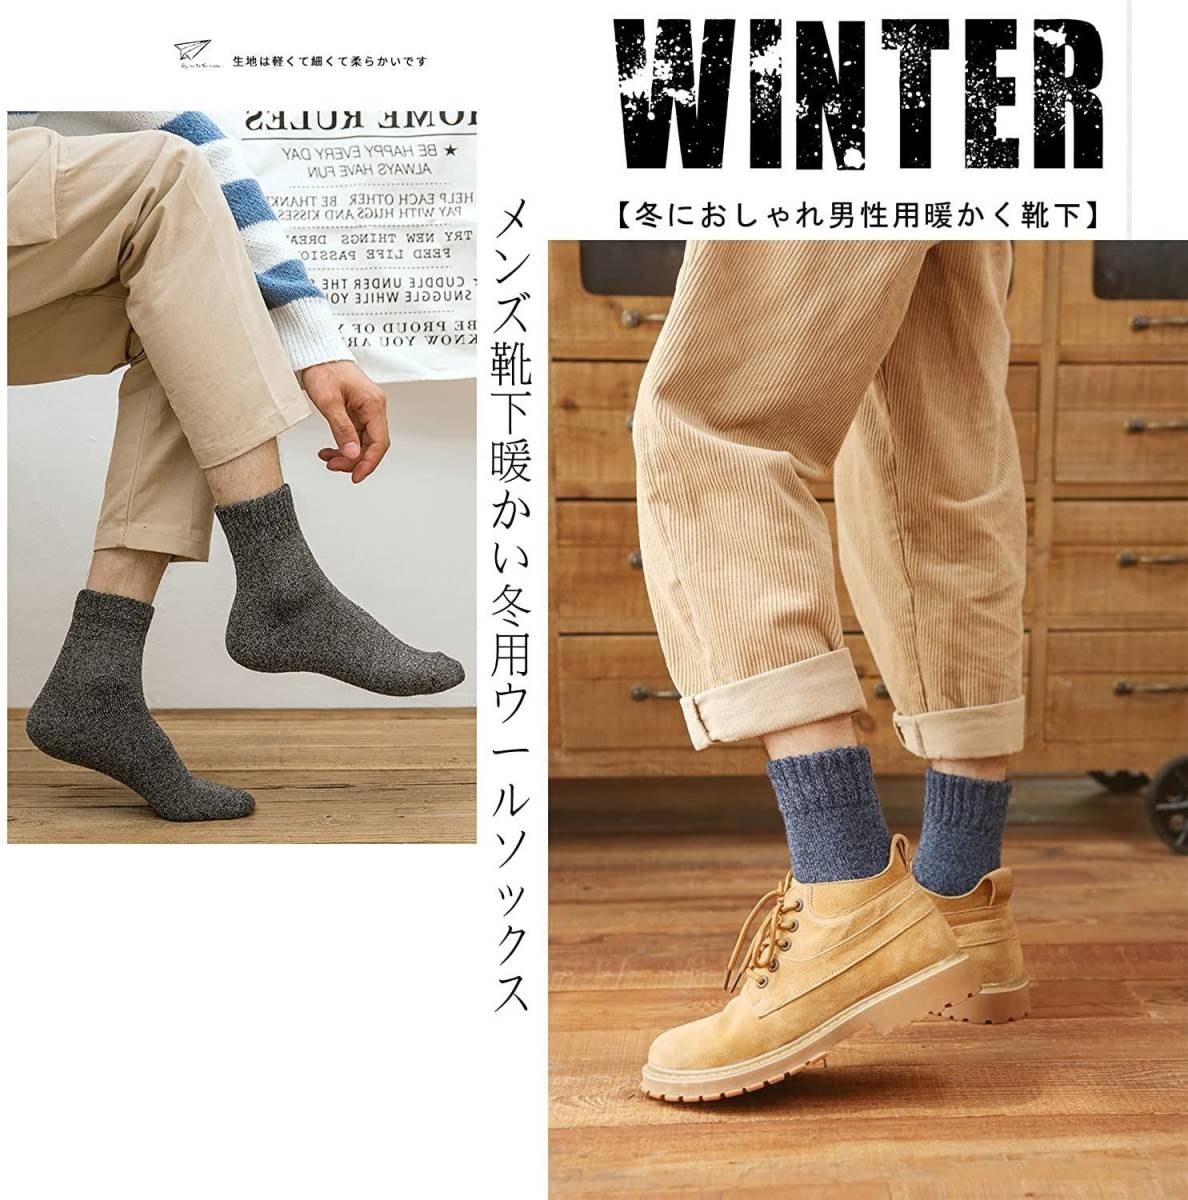  носки  мужской   Зима 5 нога  комплект   толстый   модный   тёплый  носки  хлопок ... носки 24-28cm